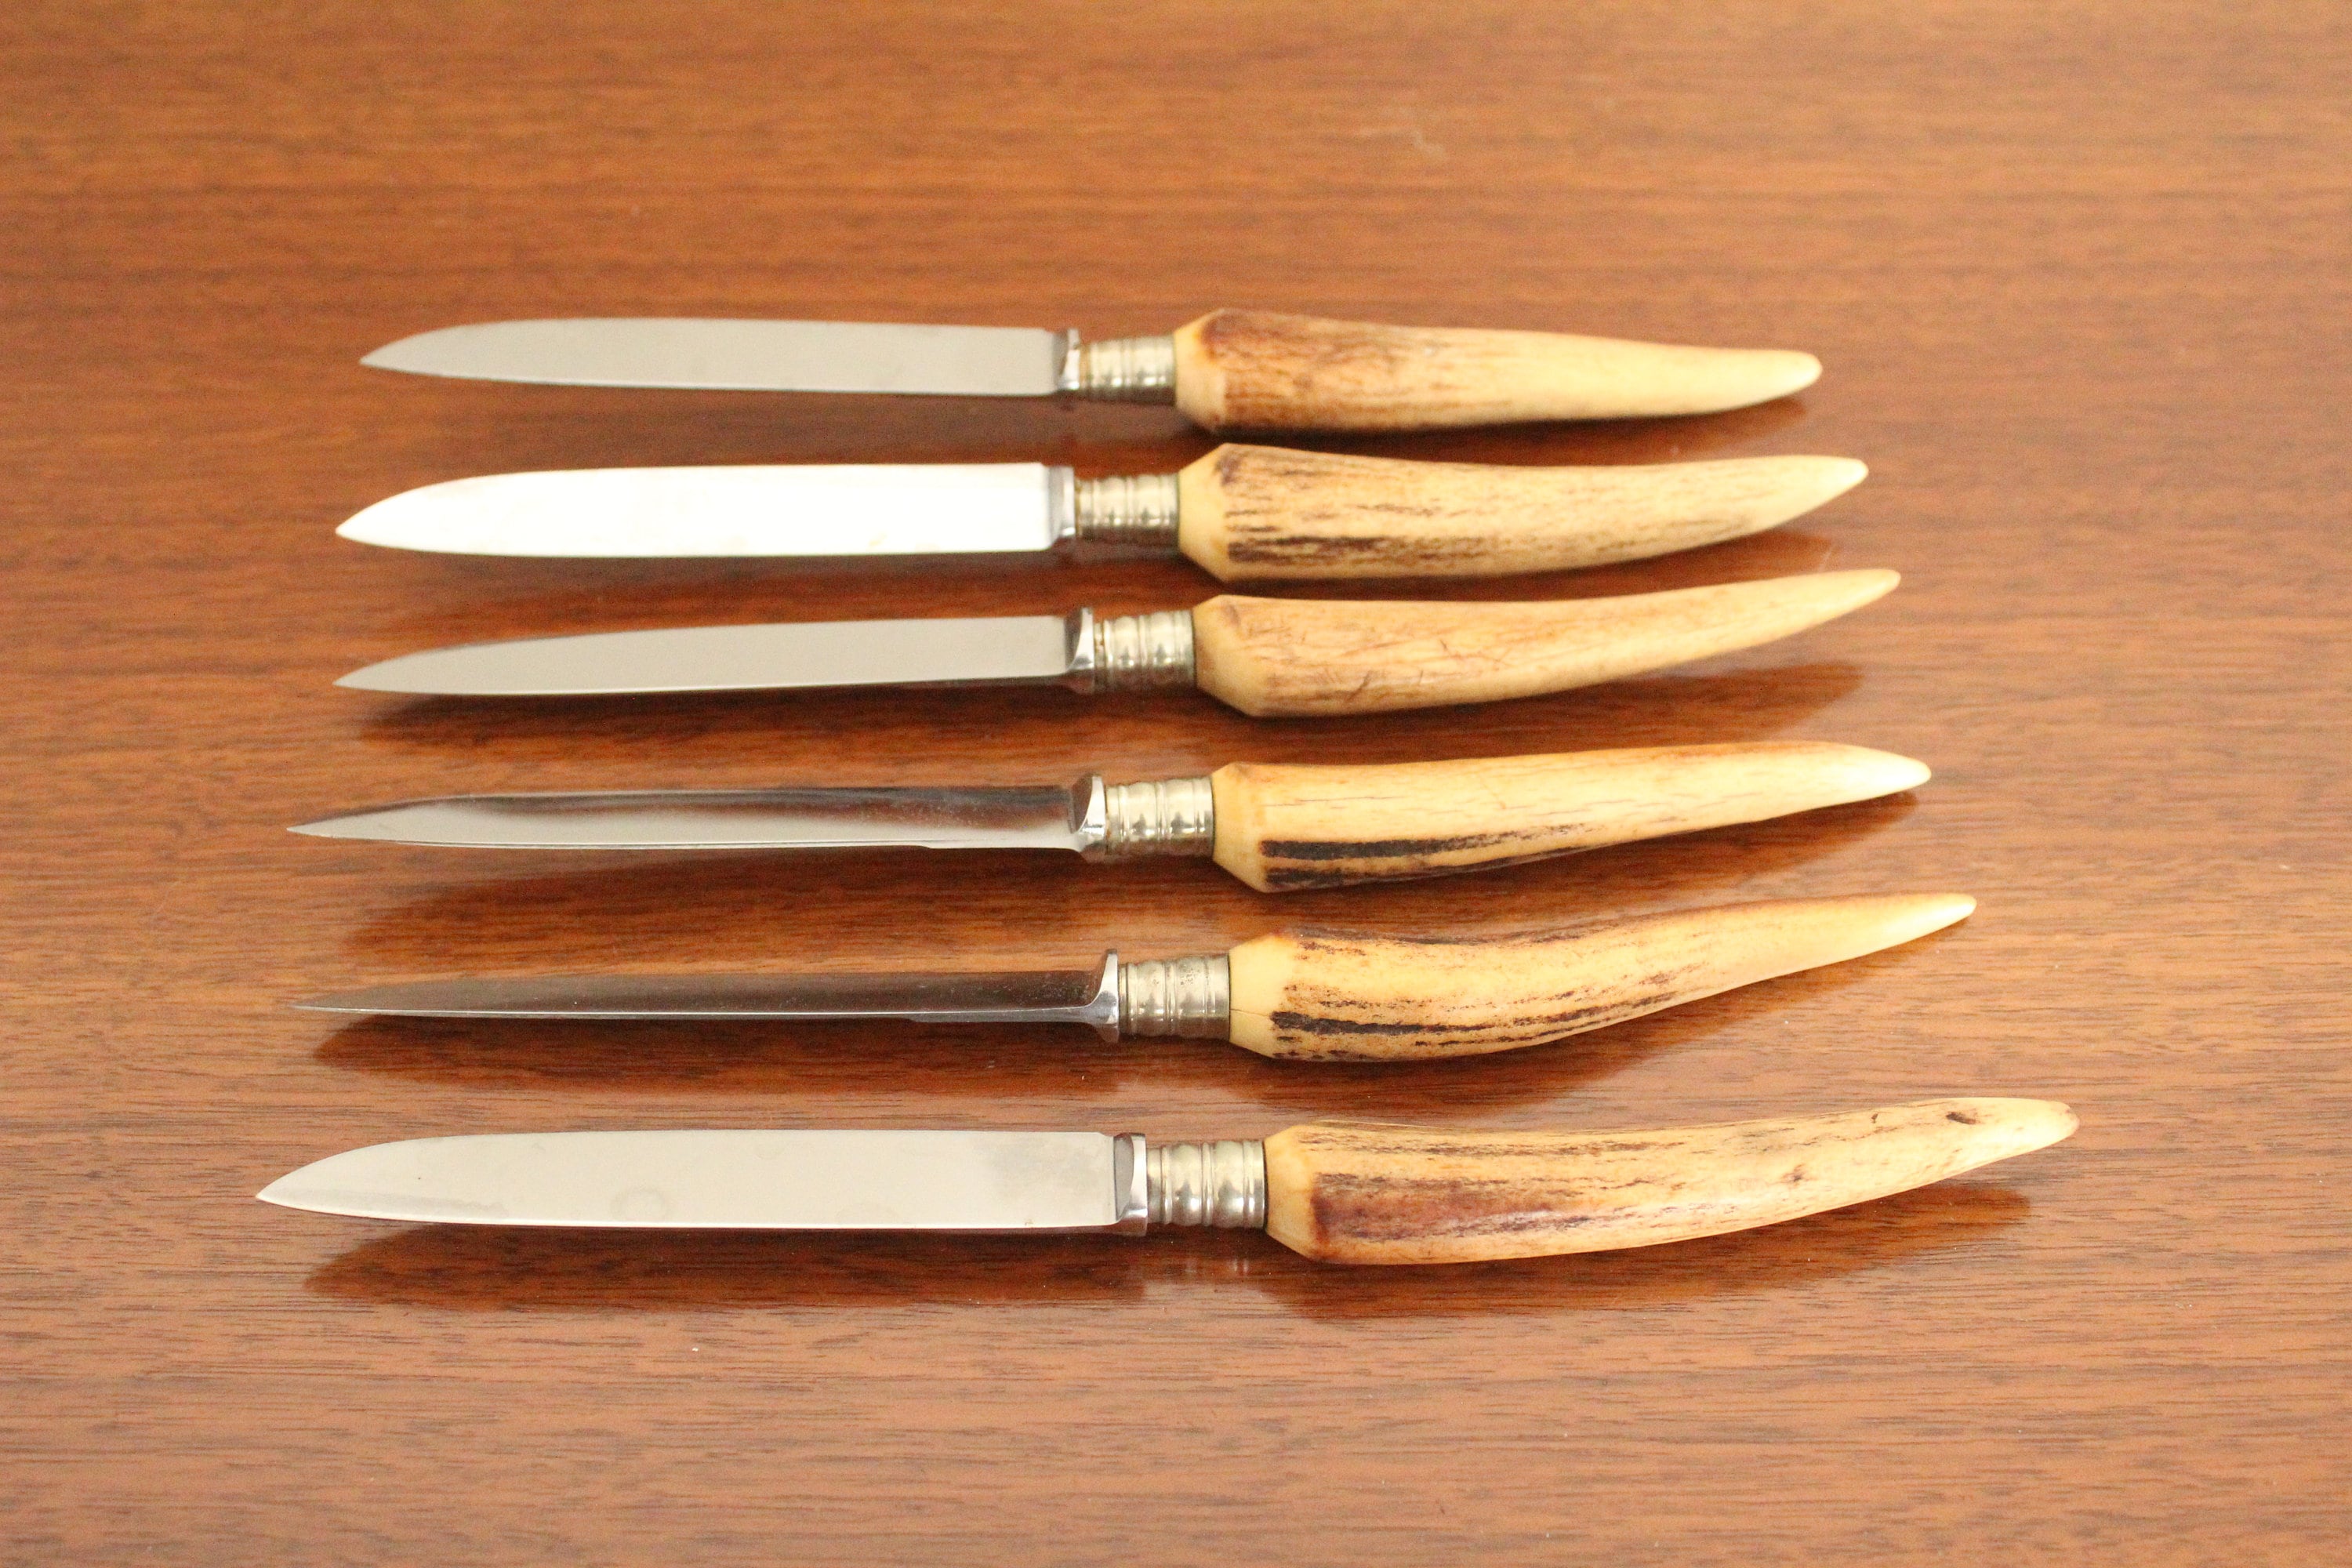 Vintage Antler-Handled Steak Knives - Set of 6 - Wonderful Life Farm